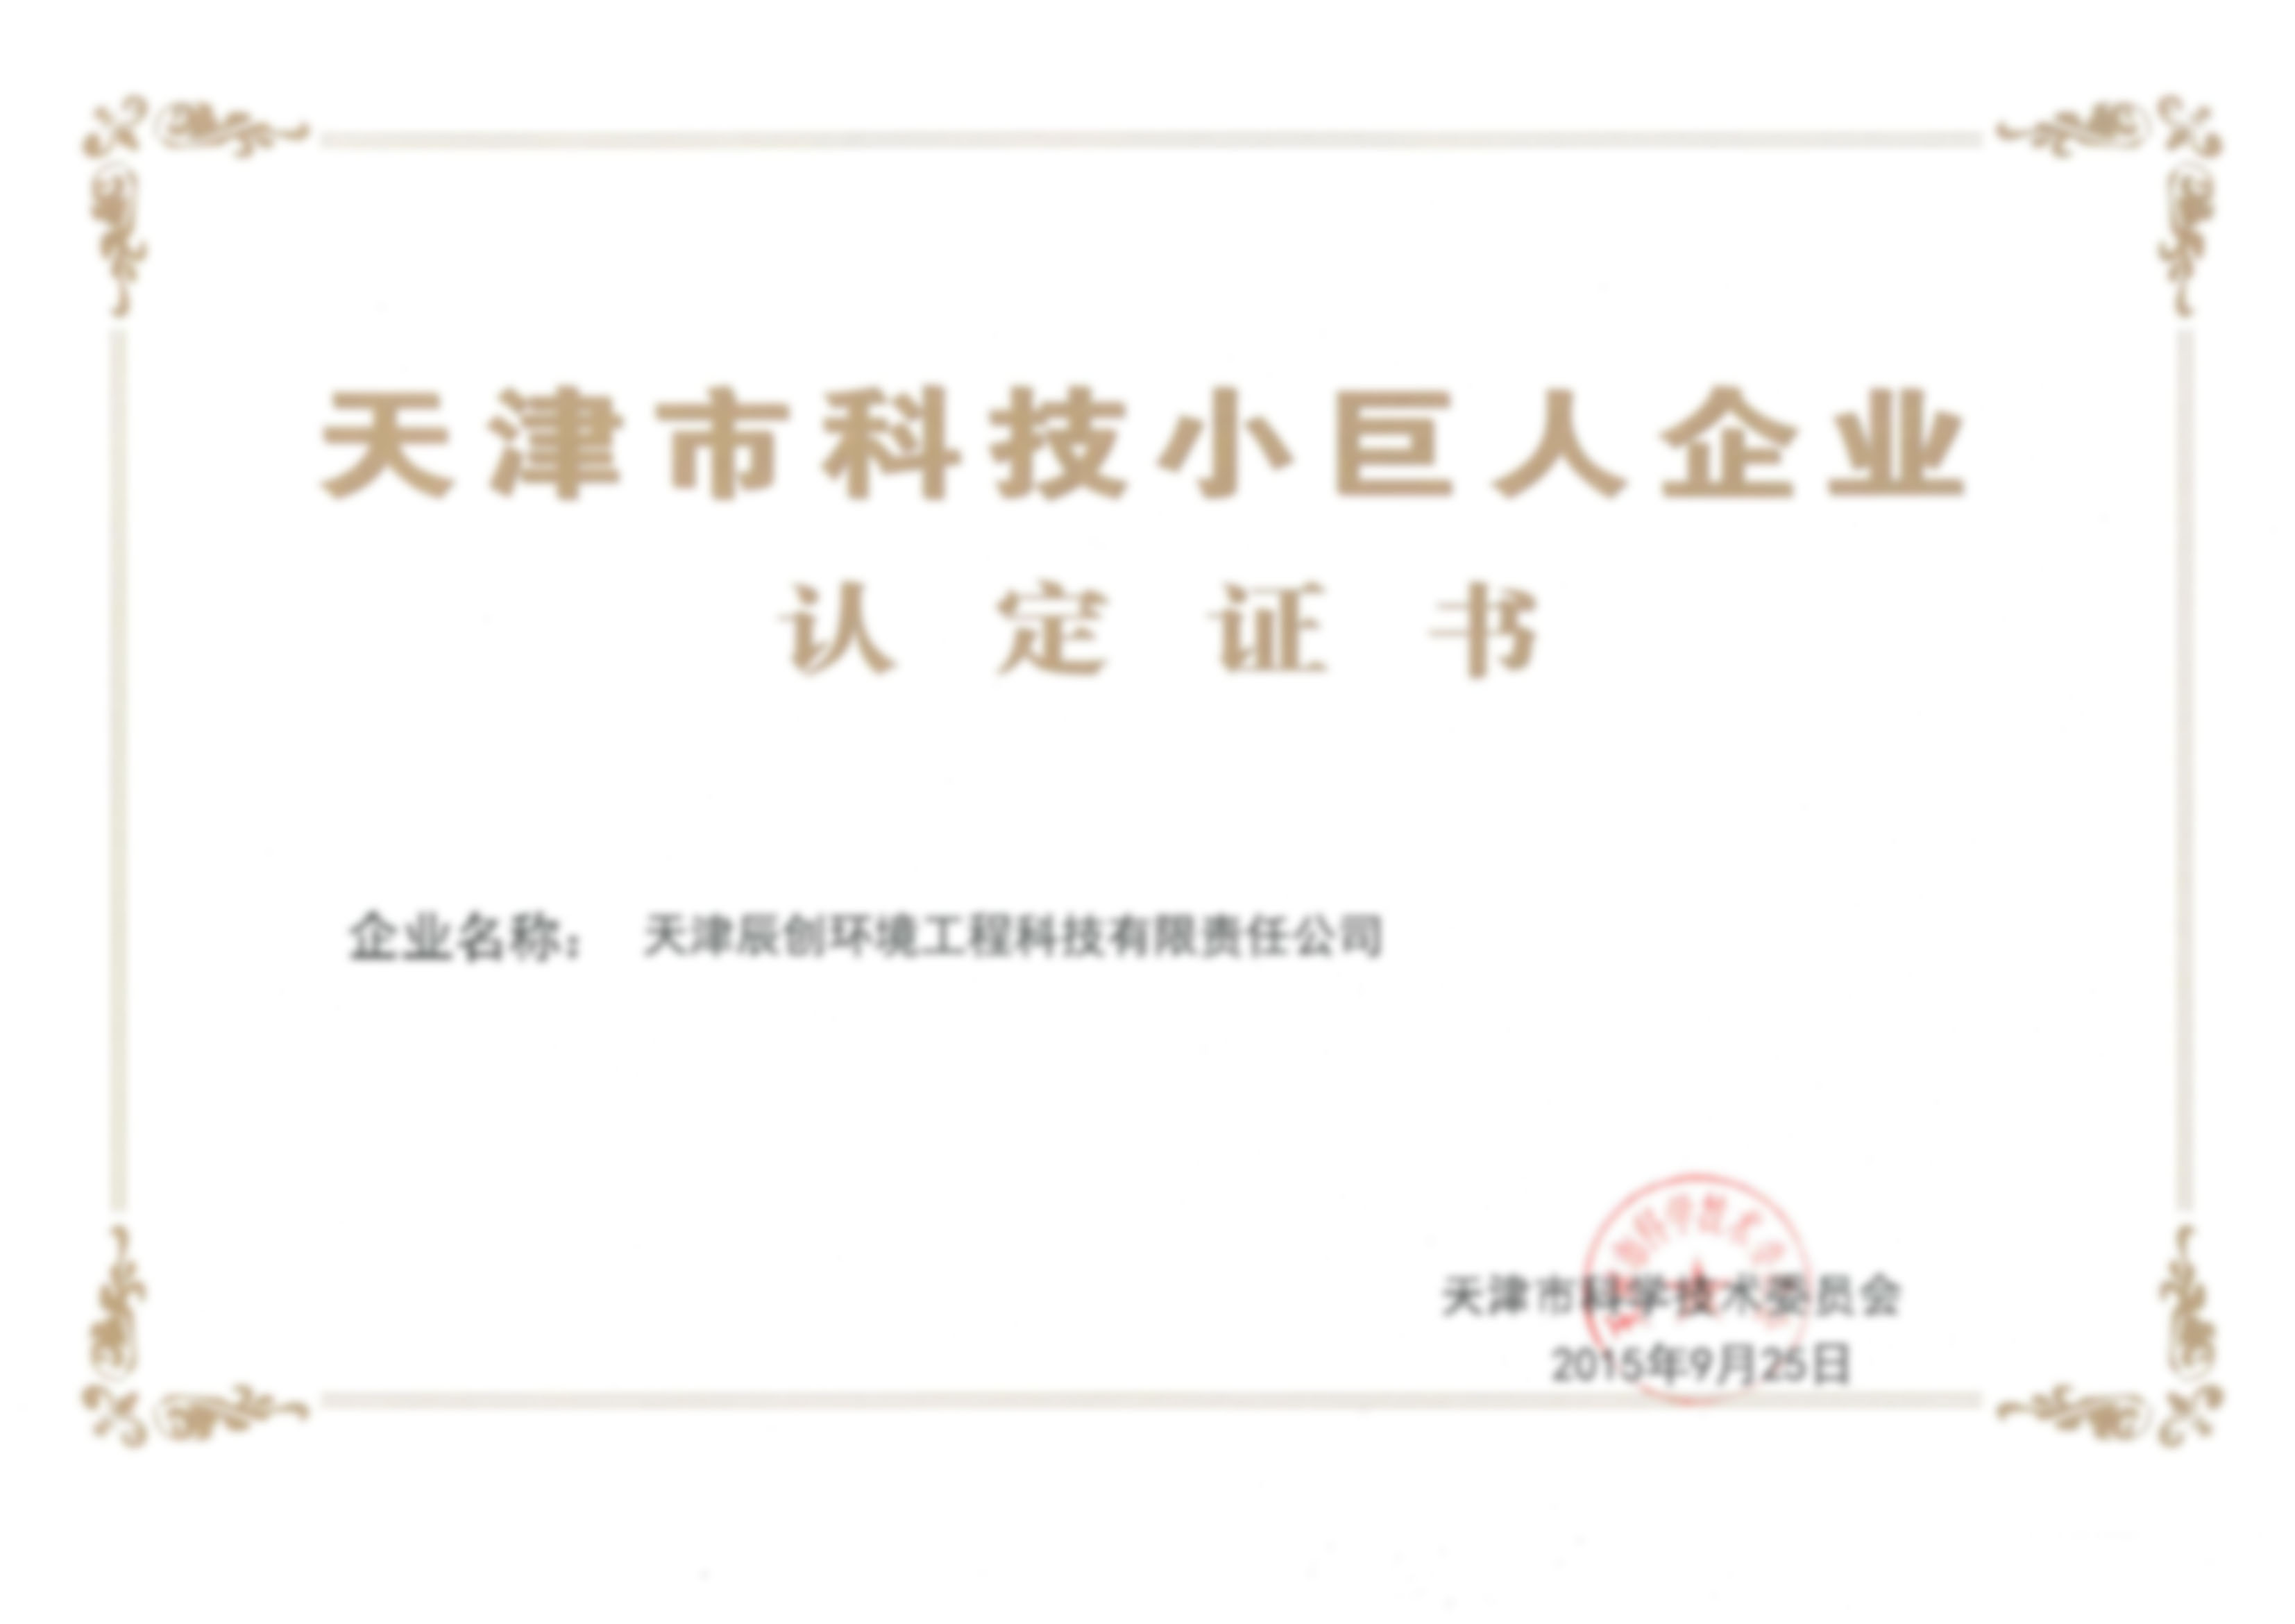 天津市科技小巨人企业认定证书